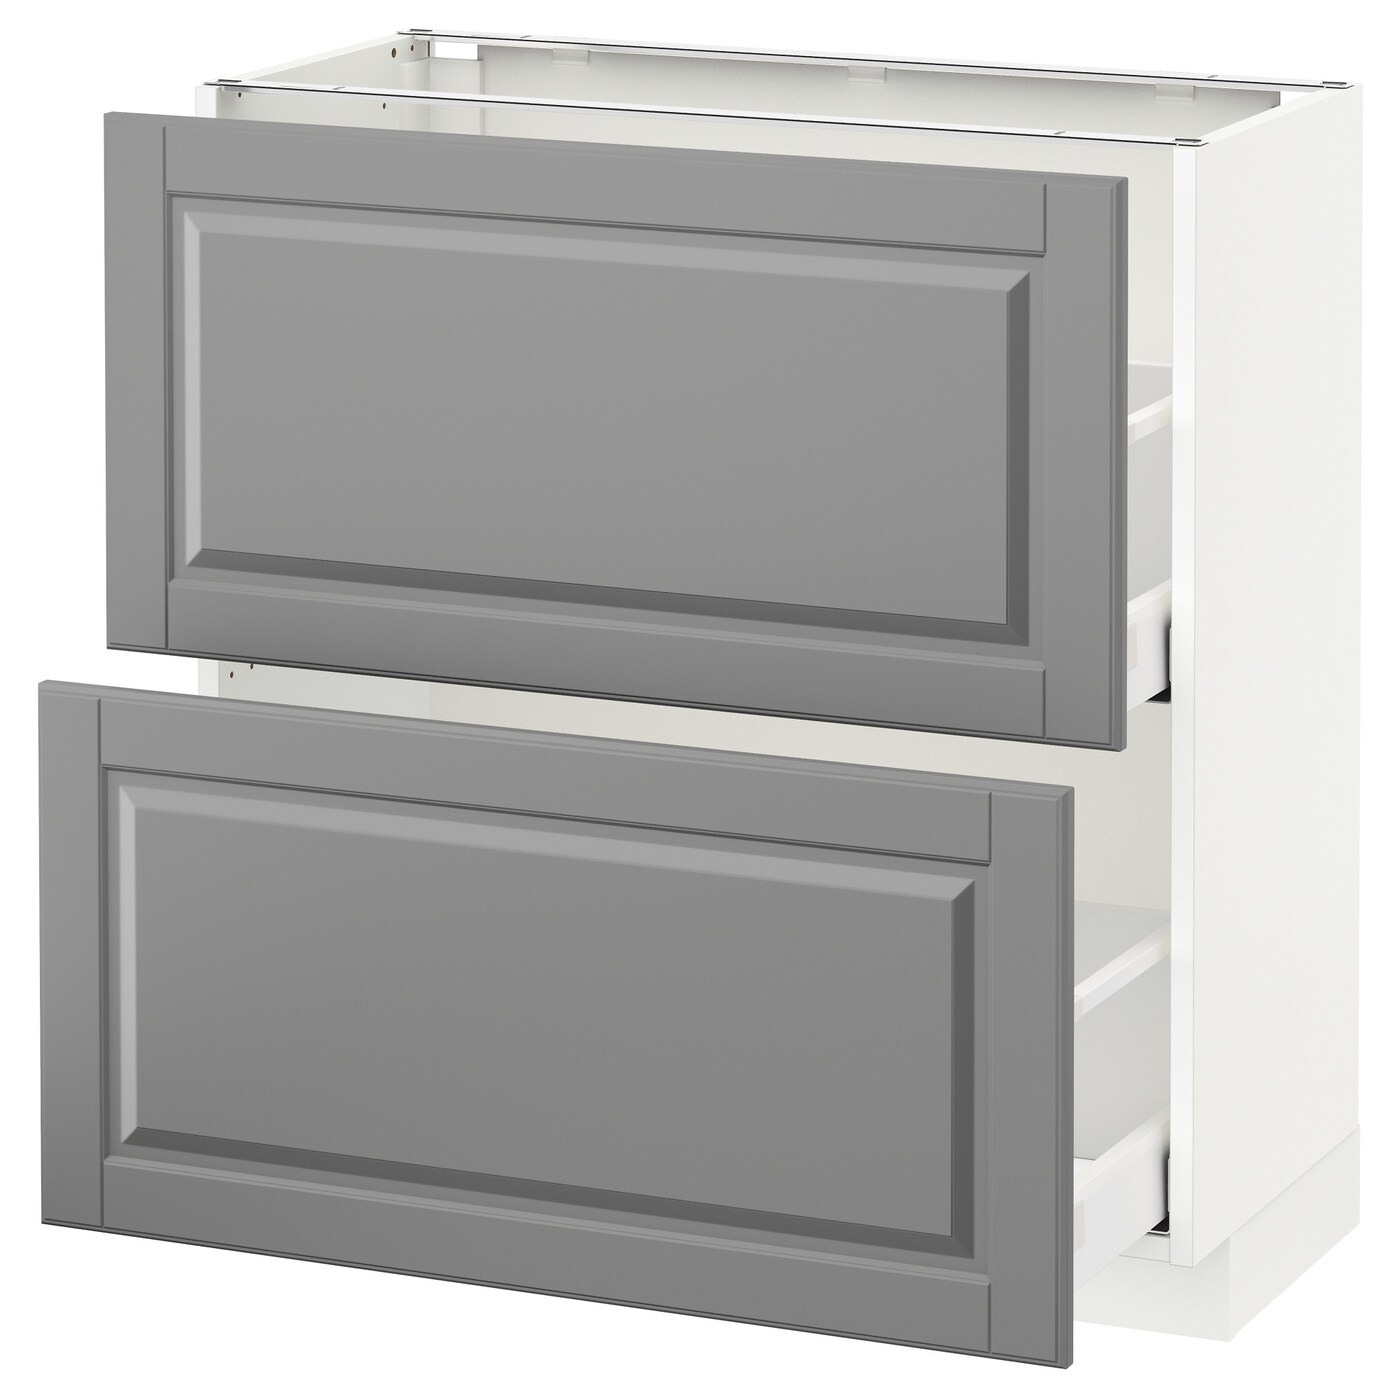 Напольный шкаф  - IKEA METOD MAXIMERA, 88x39,5x80см, белый/серый, МЕТОД МАКСИМЕРА ИКЕА